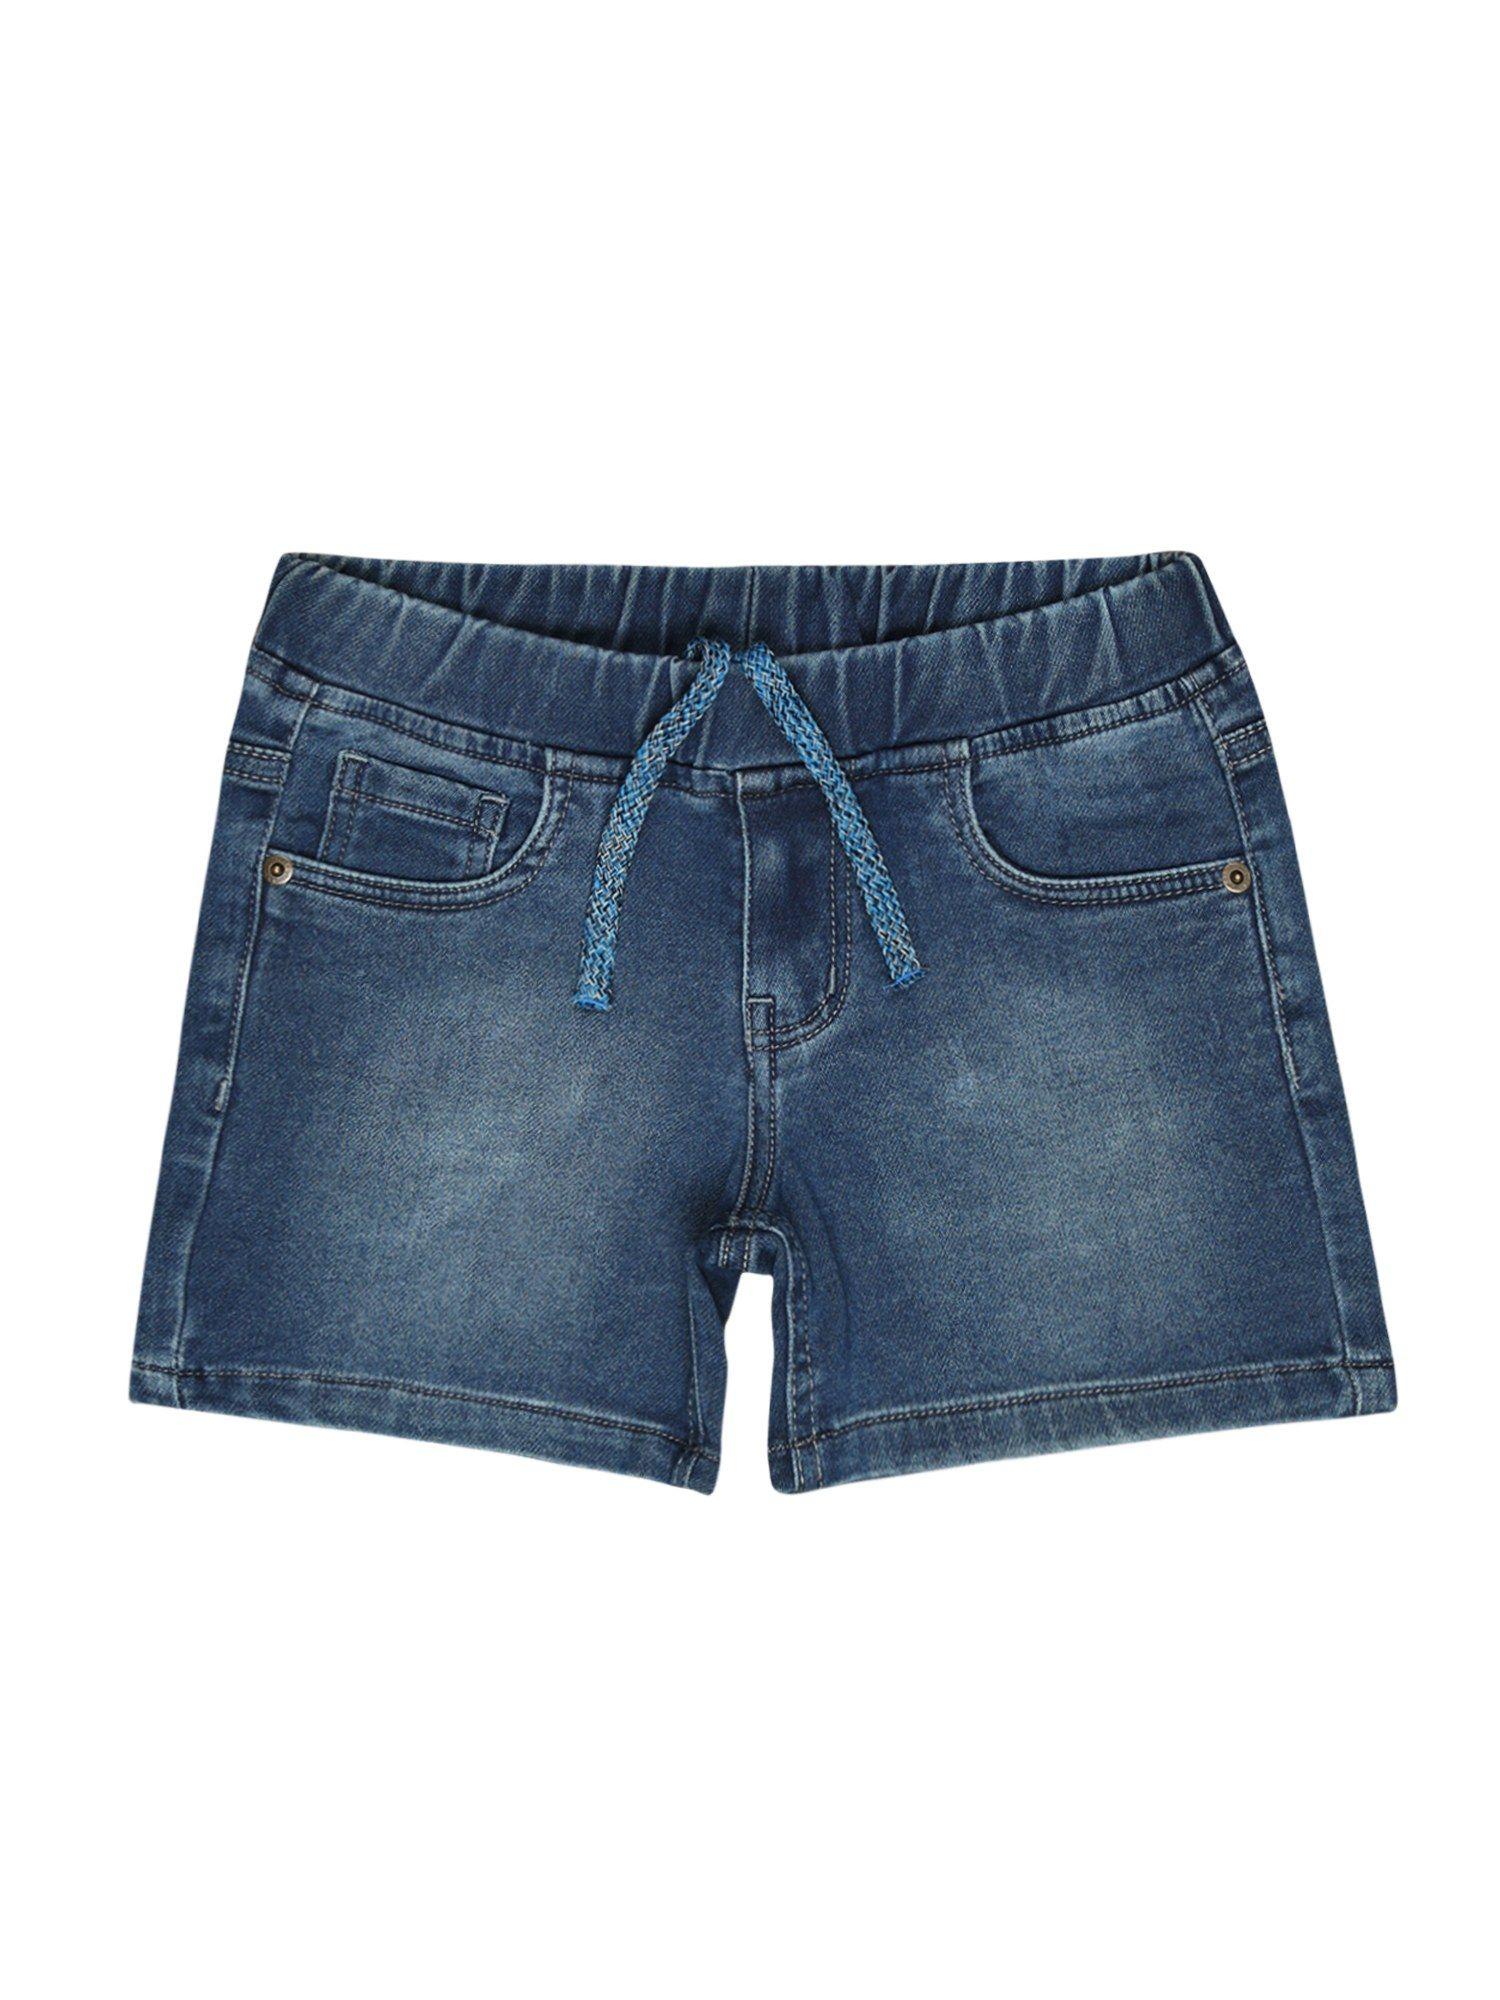 printed shorts-navy blue